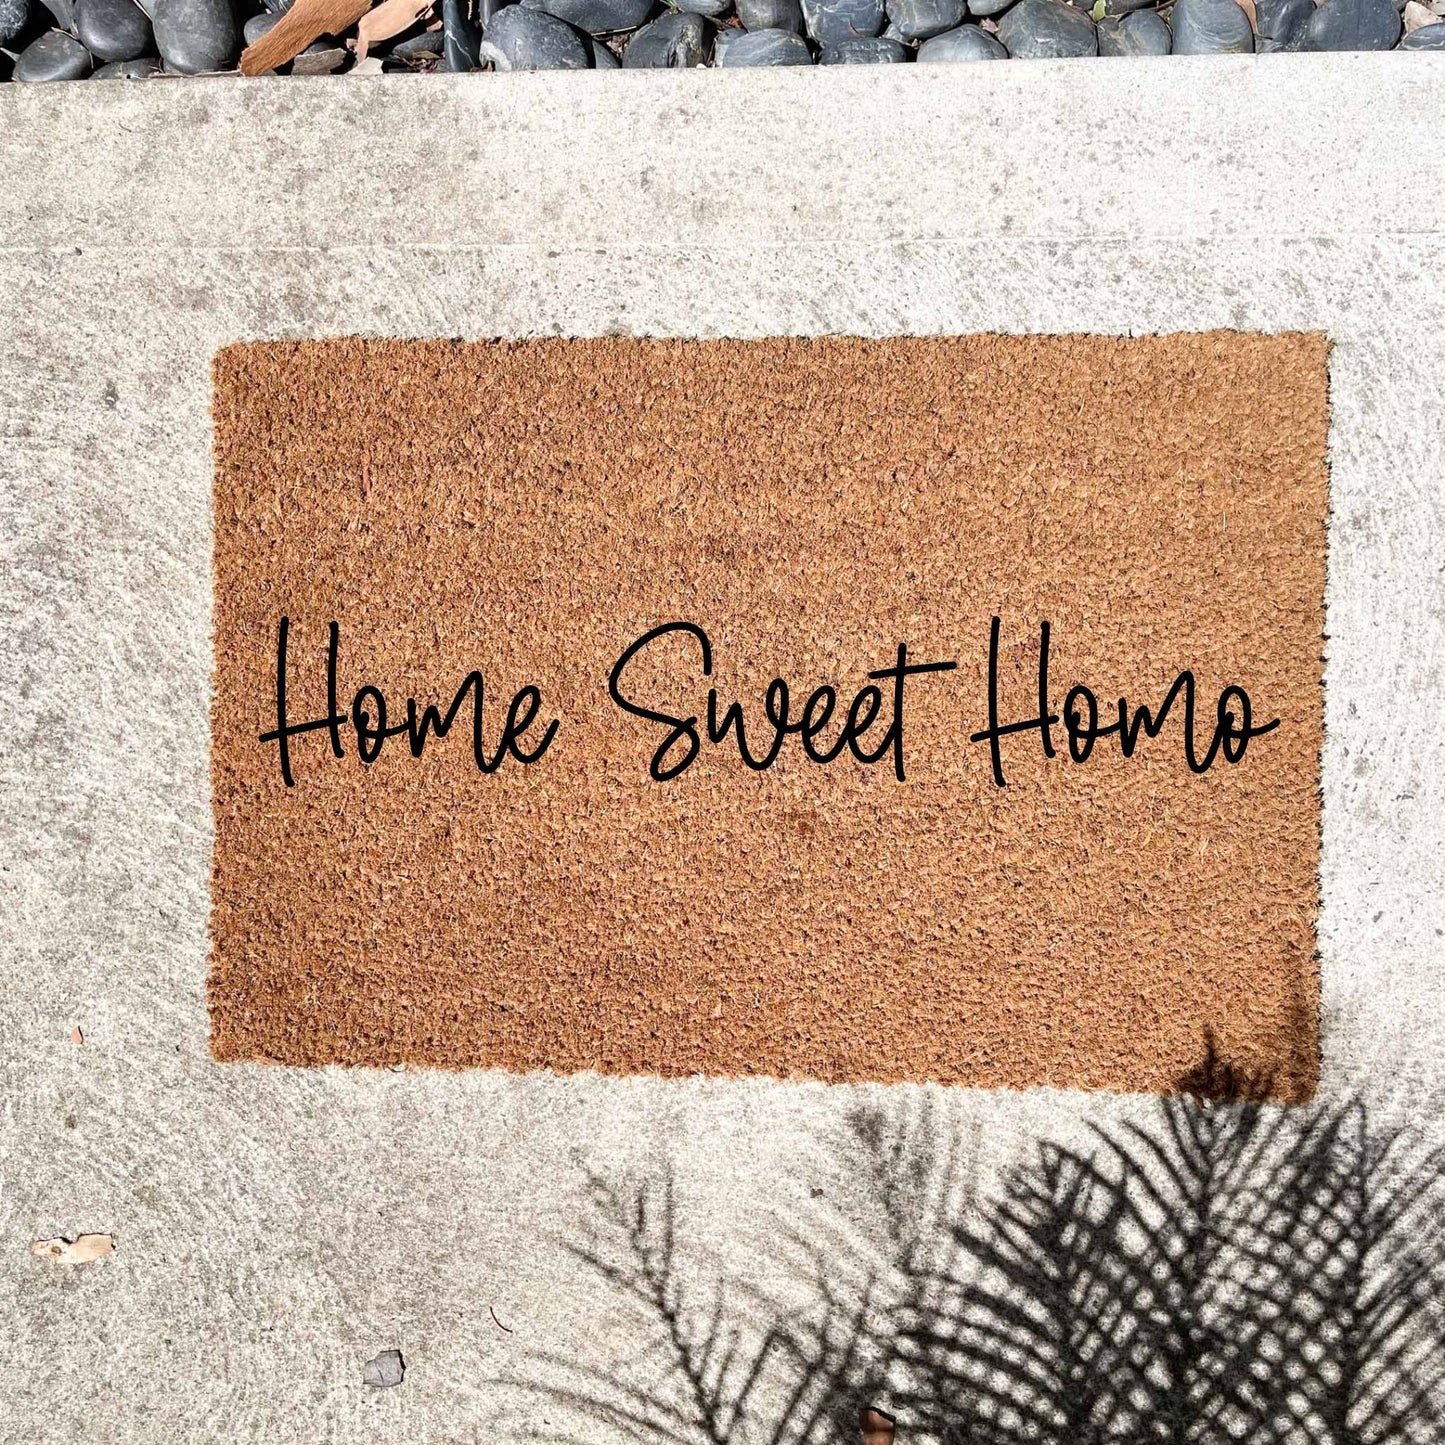 Home Sweet Homo doormat, unique doormat, custom doormat, personalised doormat